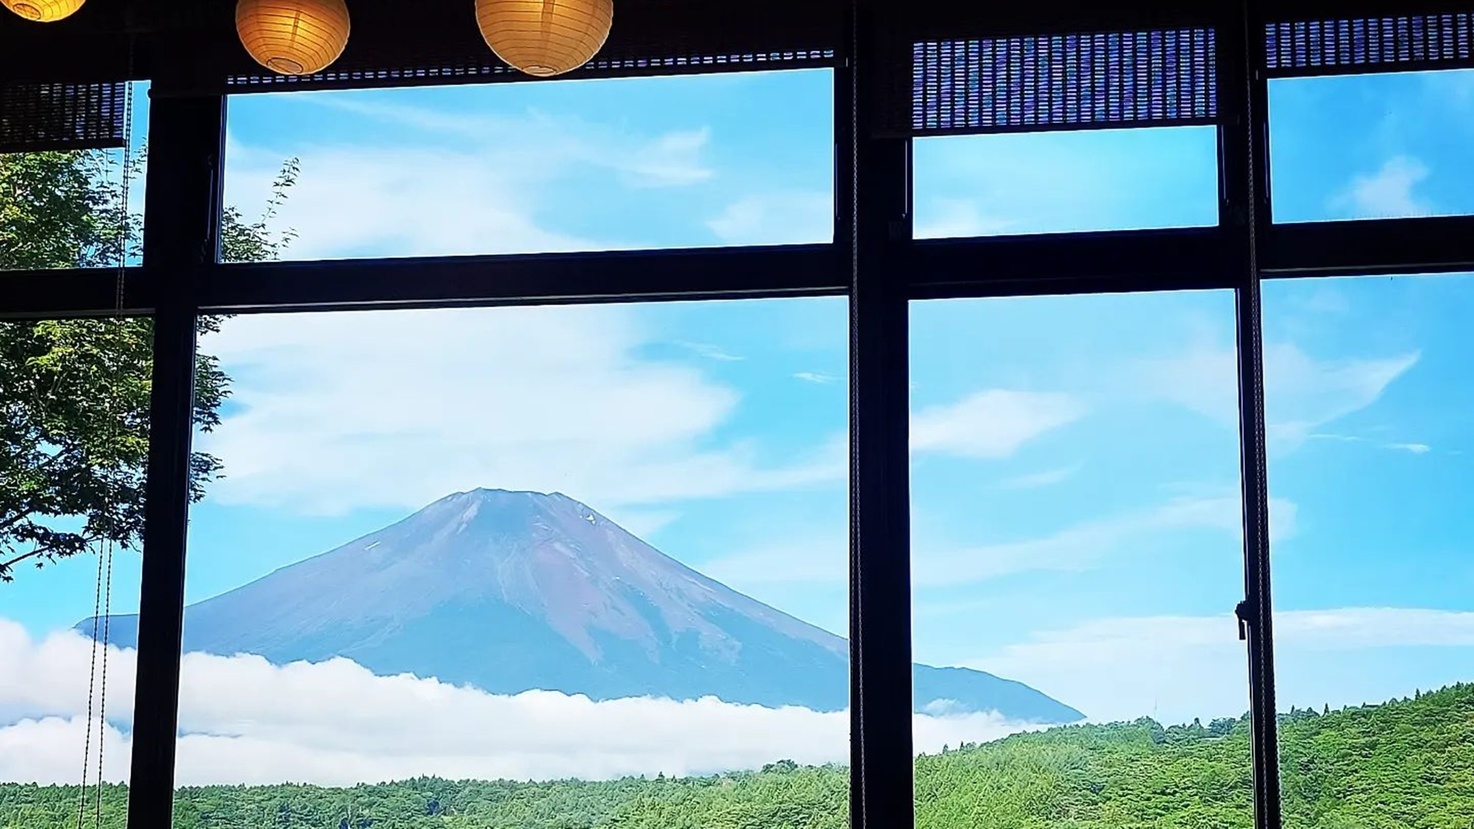 【朝食付】「絶品朝カレー」で目覚める富士山中湖の朝。全室富士山ビューの絶景宿で寛ぐ。コンビニお車3分